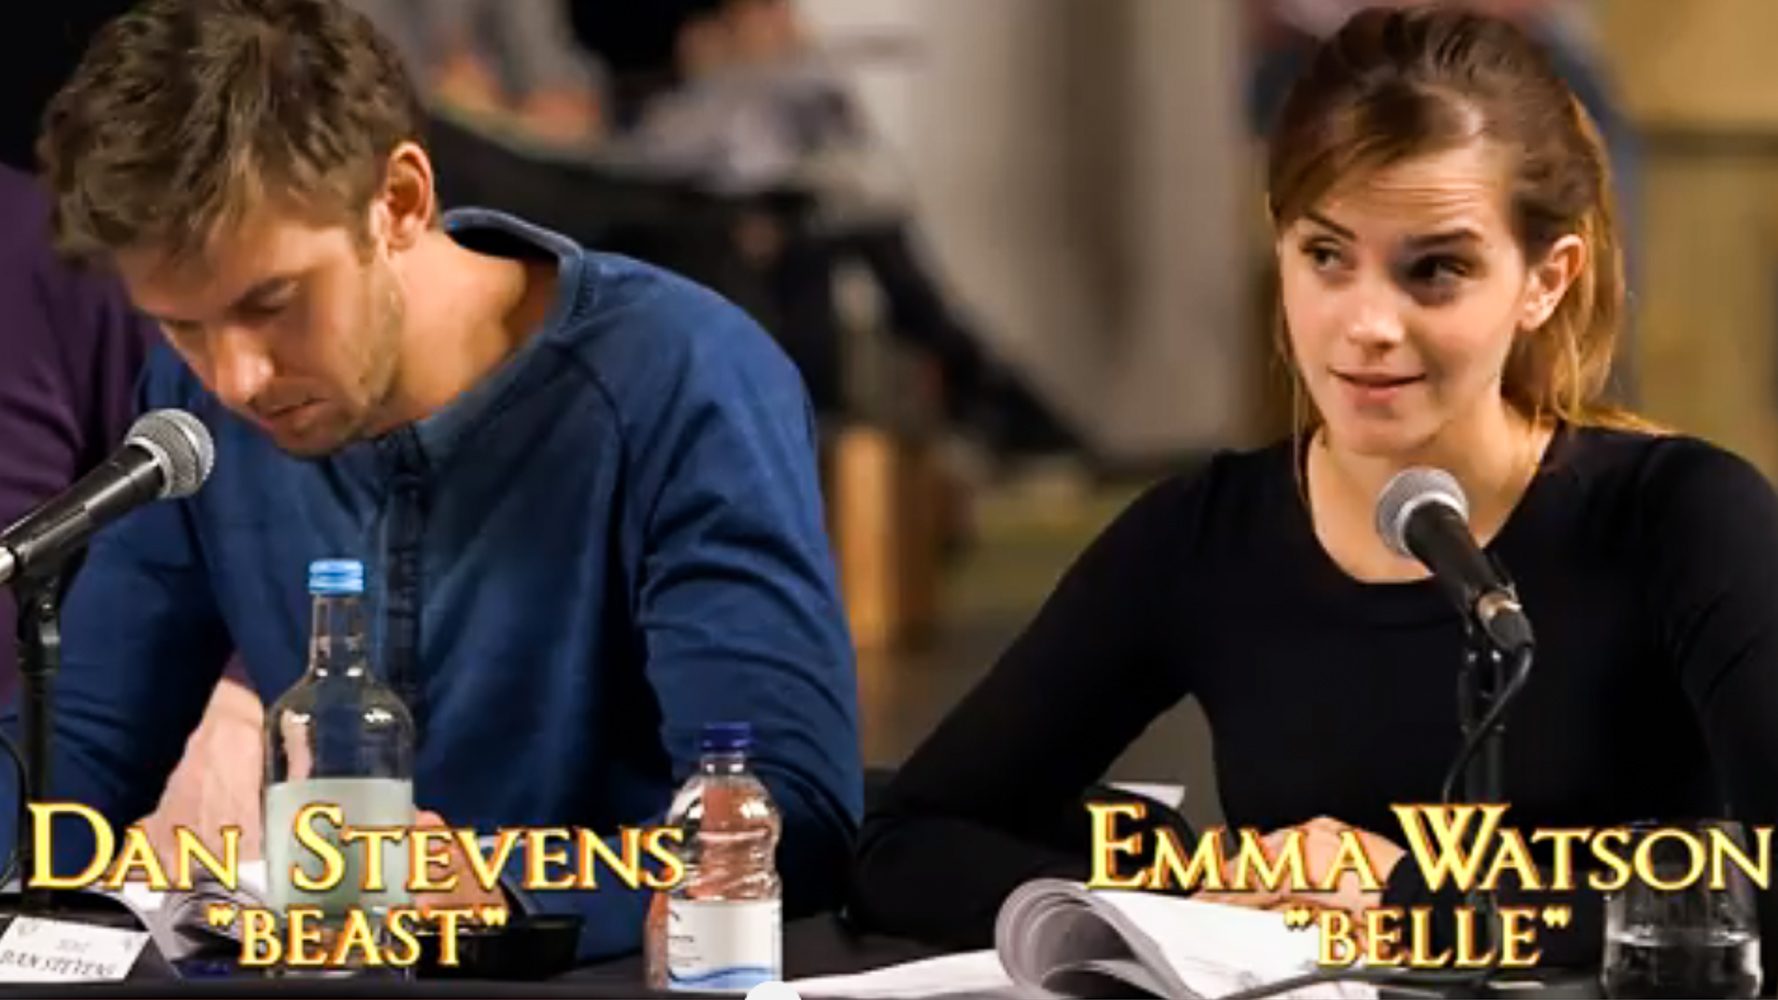 WATCH: A peek at Emma Watson, Dan Stevens reading ‘Beauty and the Beast’ scenes